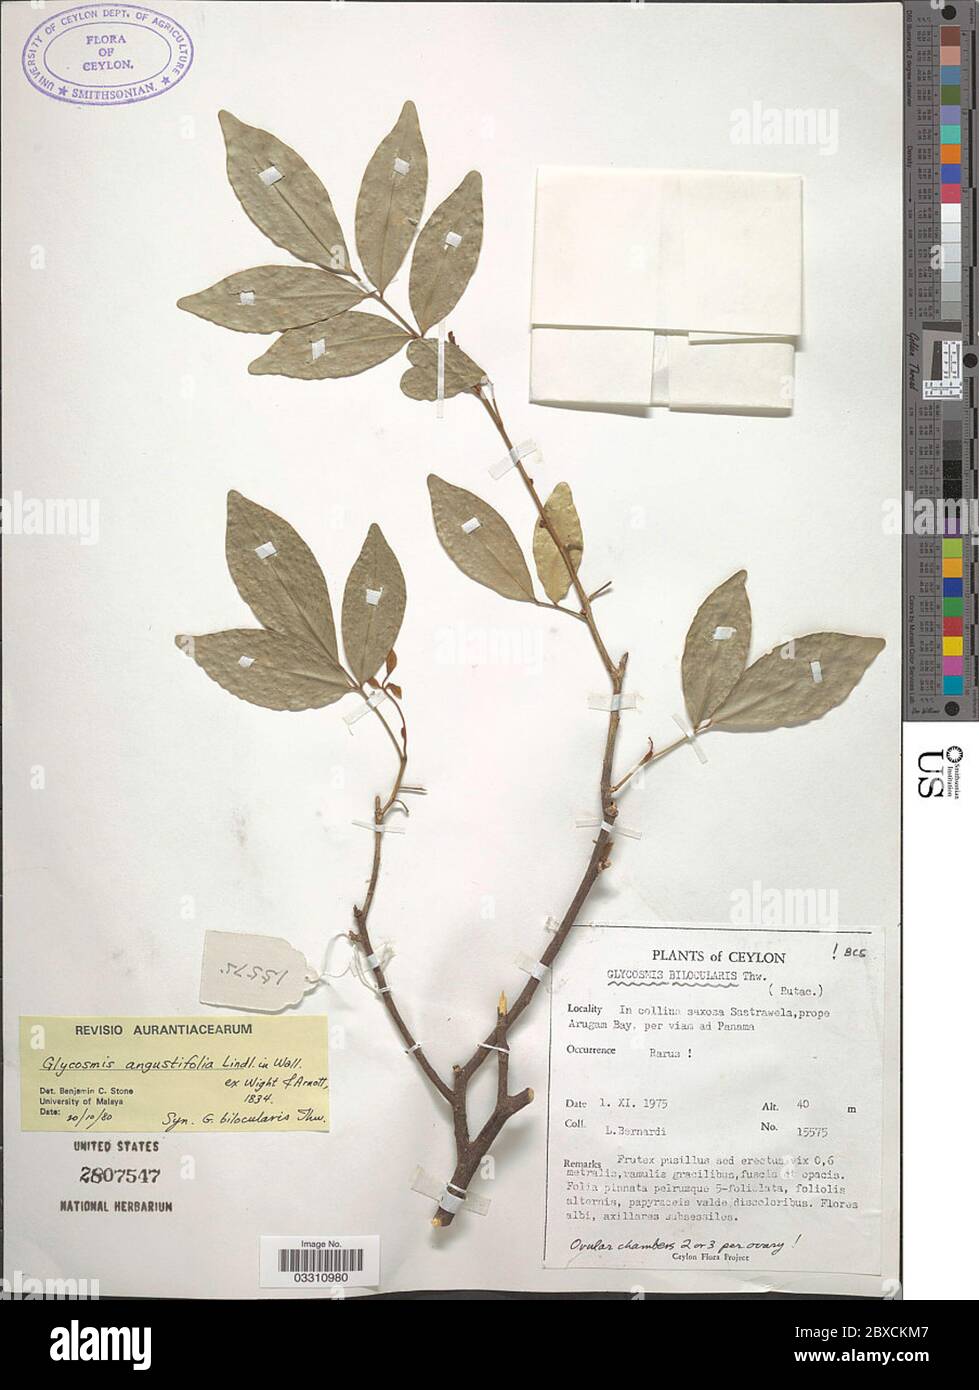 Glycosmis angustifolia Lindl ex Wight Arn Glycosmis angustifolia Lindl ex Wight Arn. Stock Photo